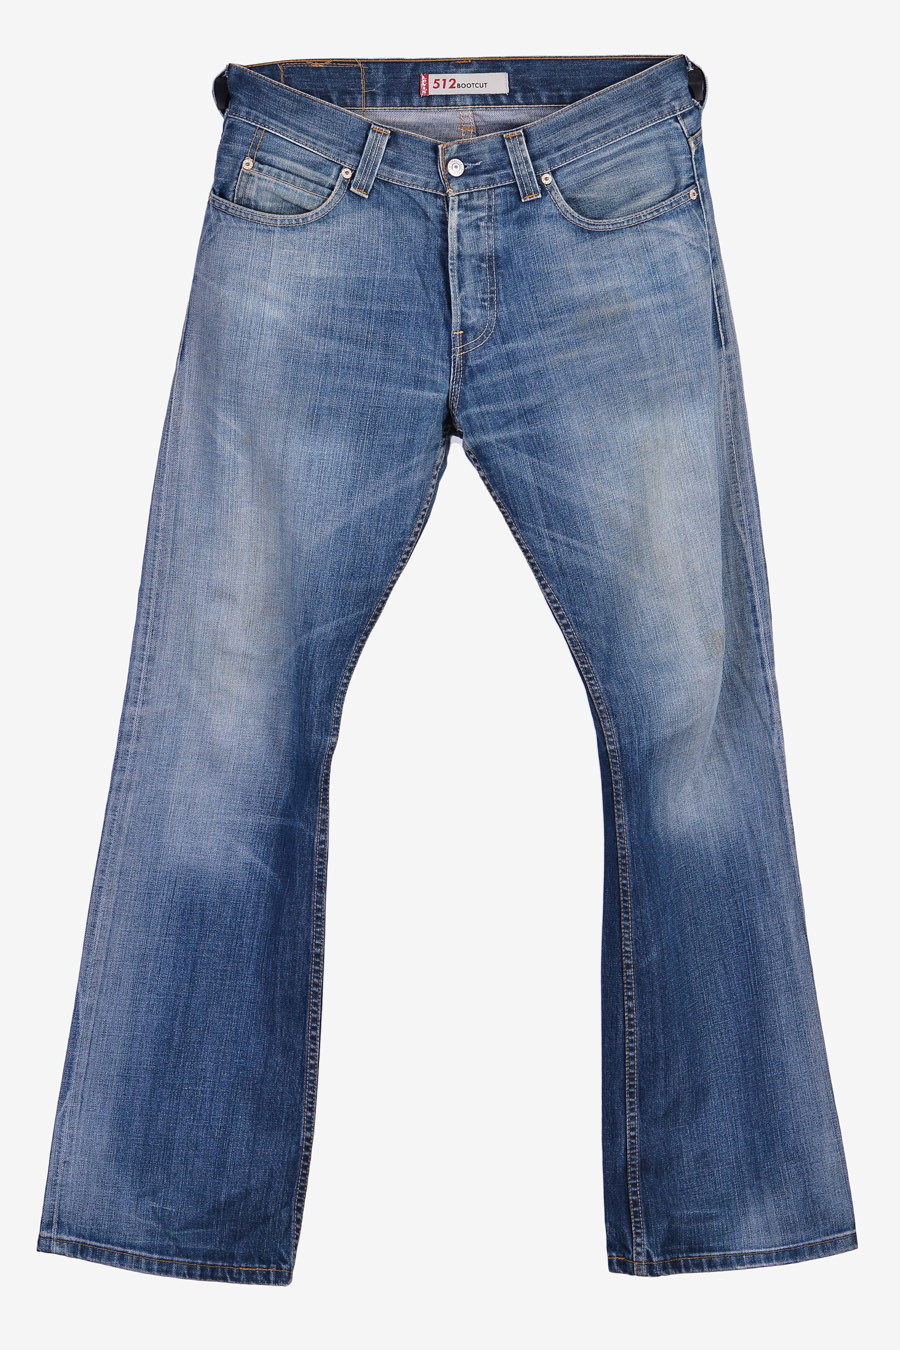 Vintage Levi's 512 Jeans | Size 32/34 - Brick Vintage